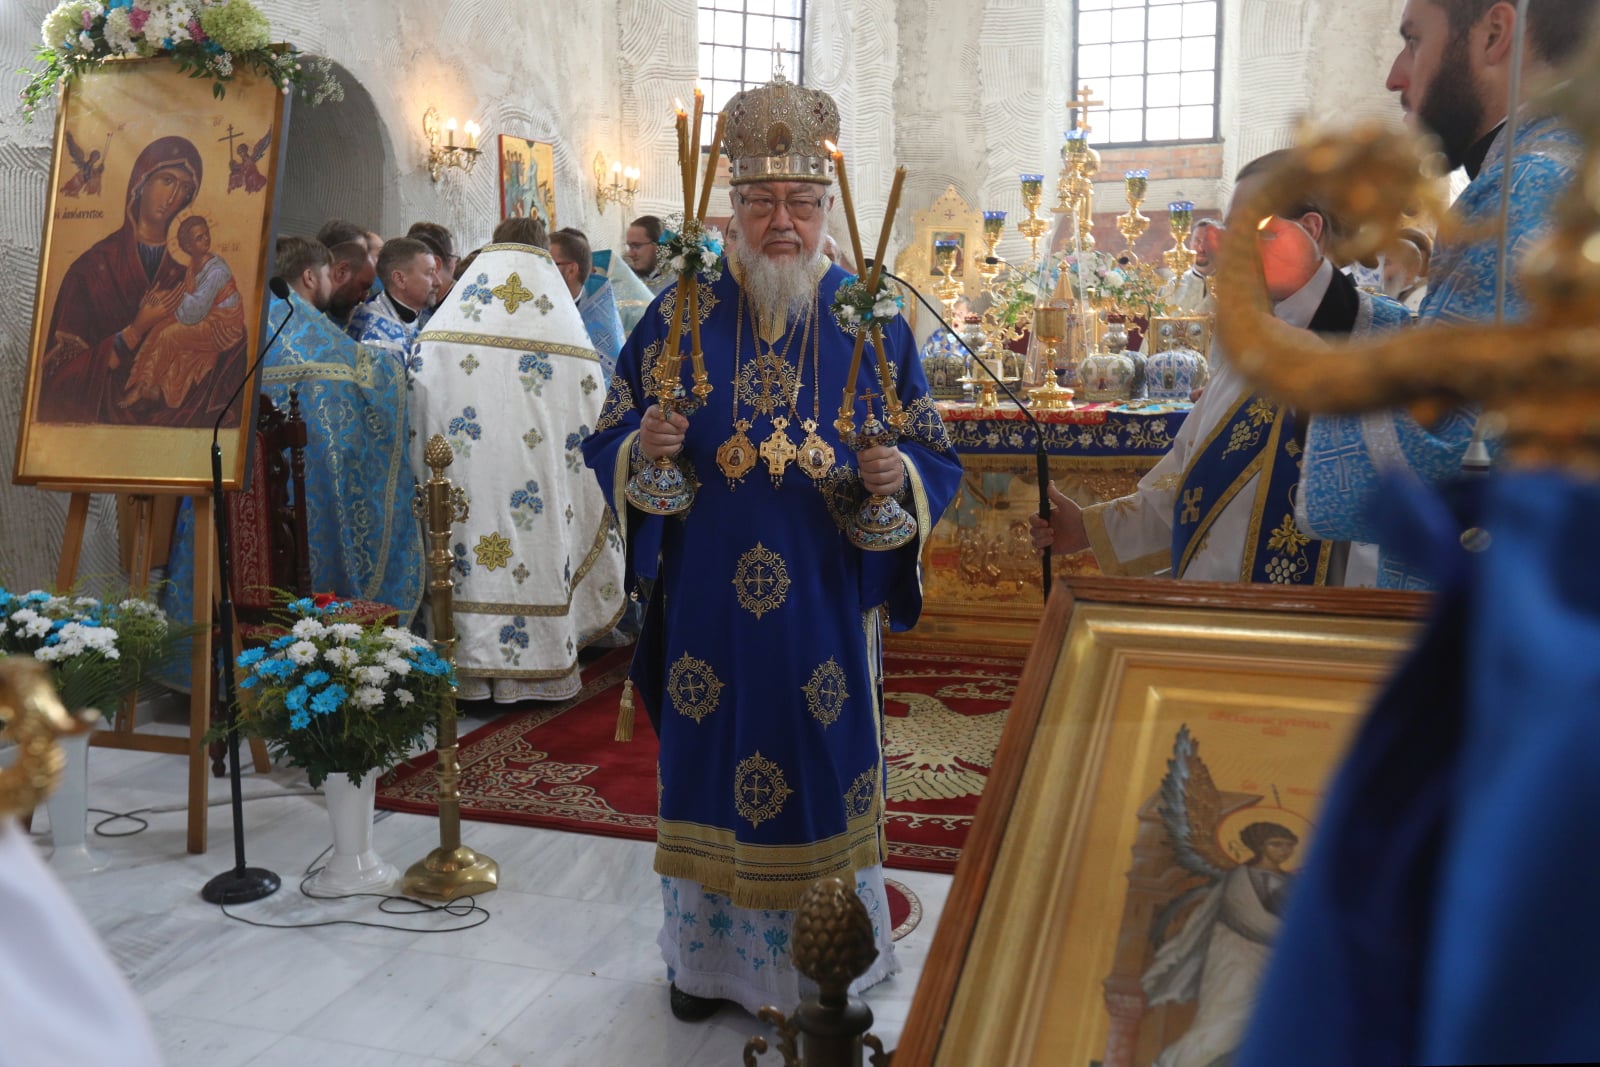 Supraśl, Obchody prawosławnego święta Supraskiej Ikony Matki Boskiej
PAP/Artur Reszko